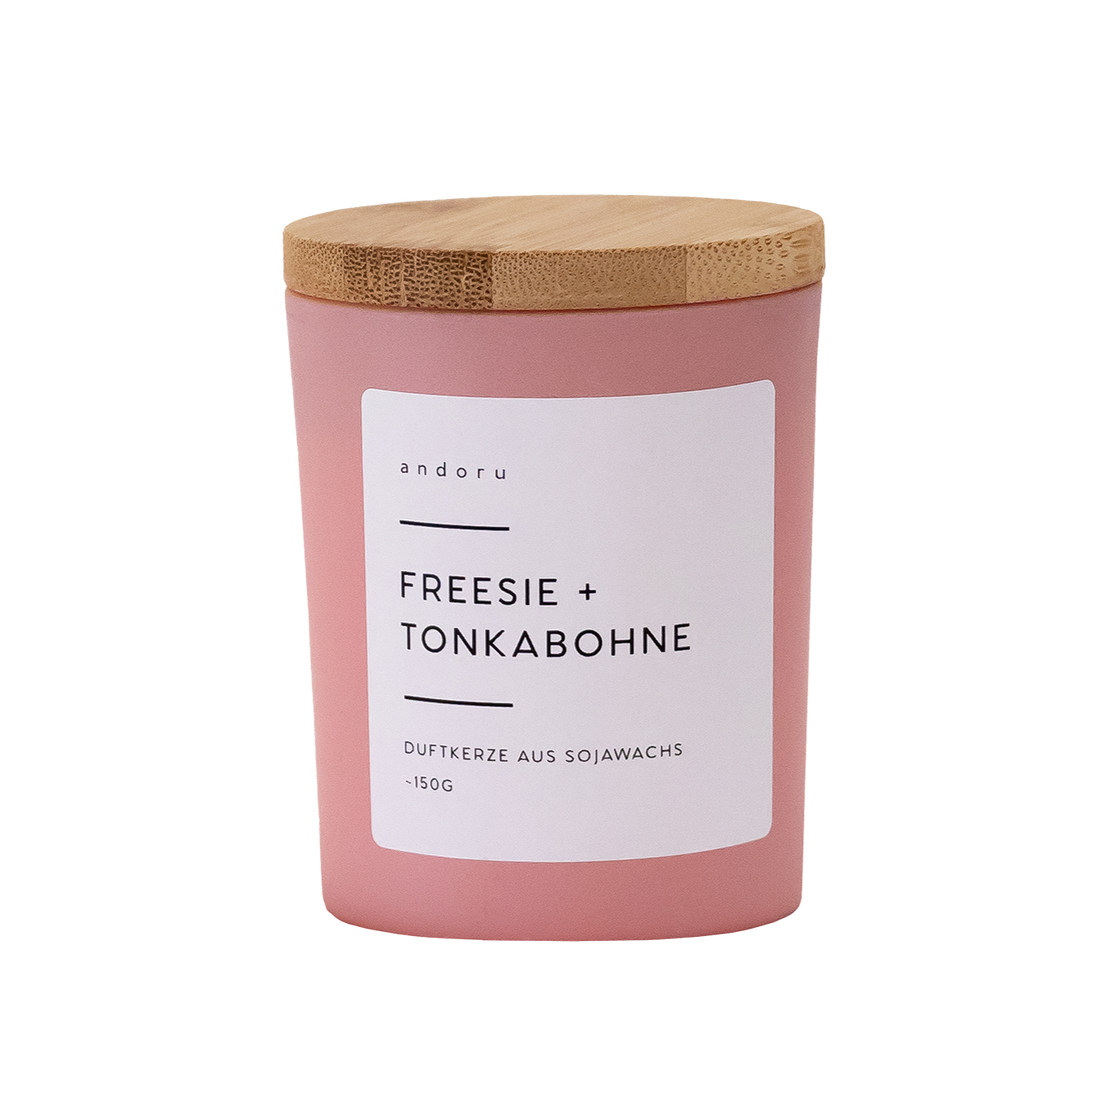 Freesie + Tonkabohne - andoru Duftkerze im rosa Glas mit Deckel aus Holz